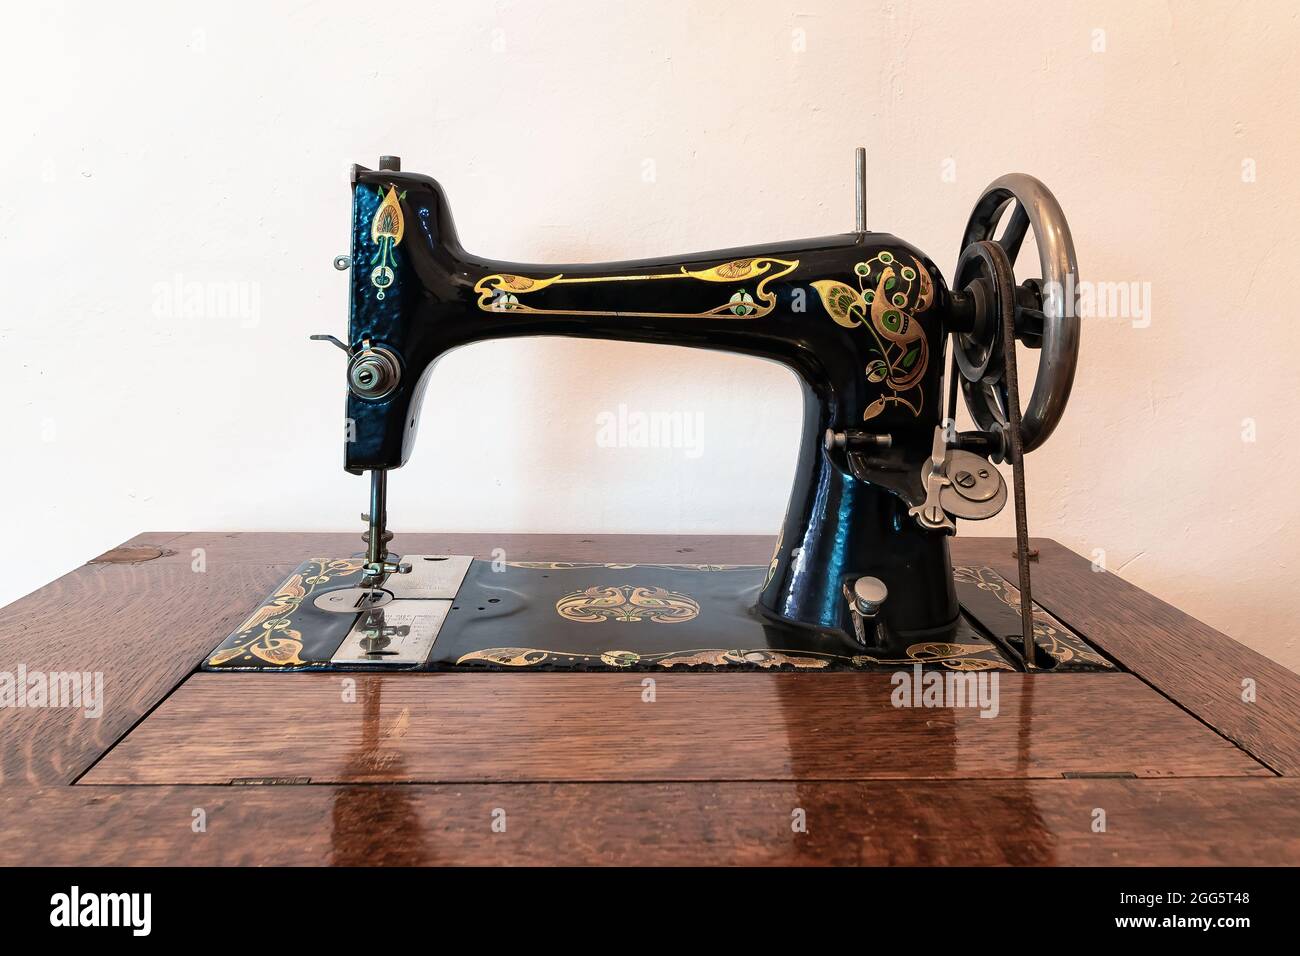 Ancienne machine à coudre dans un mobilier en bois Banque D'Images